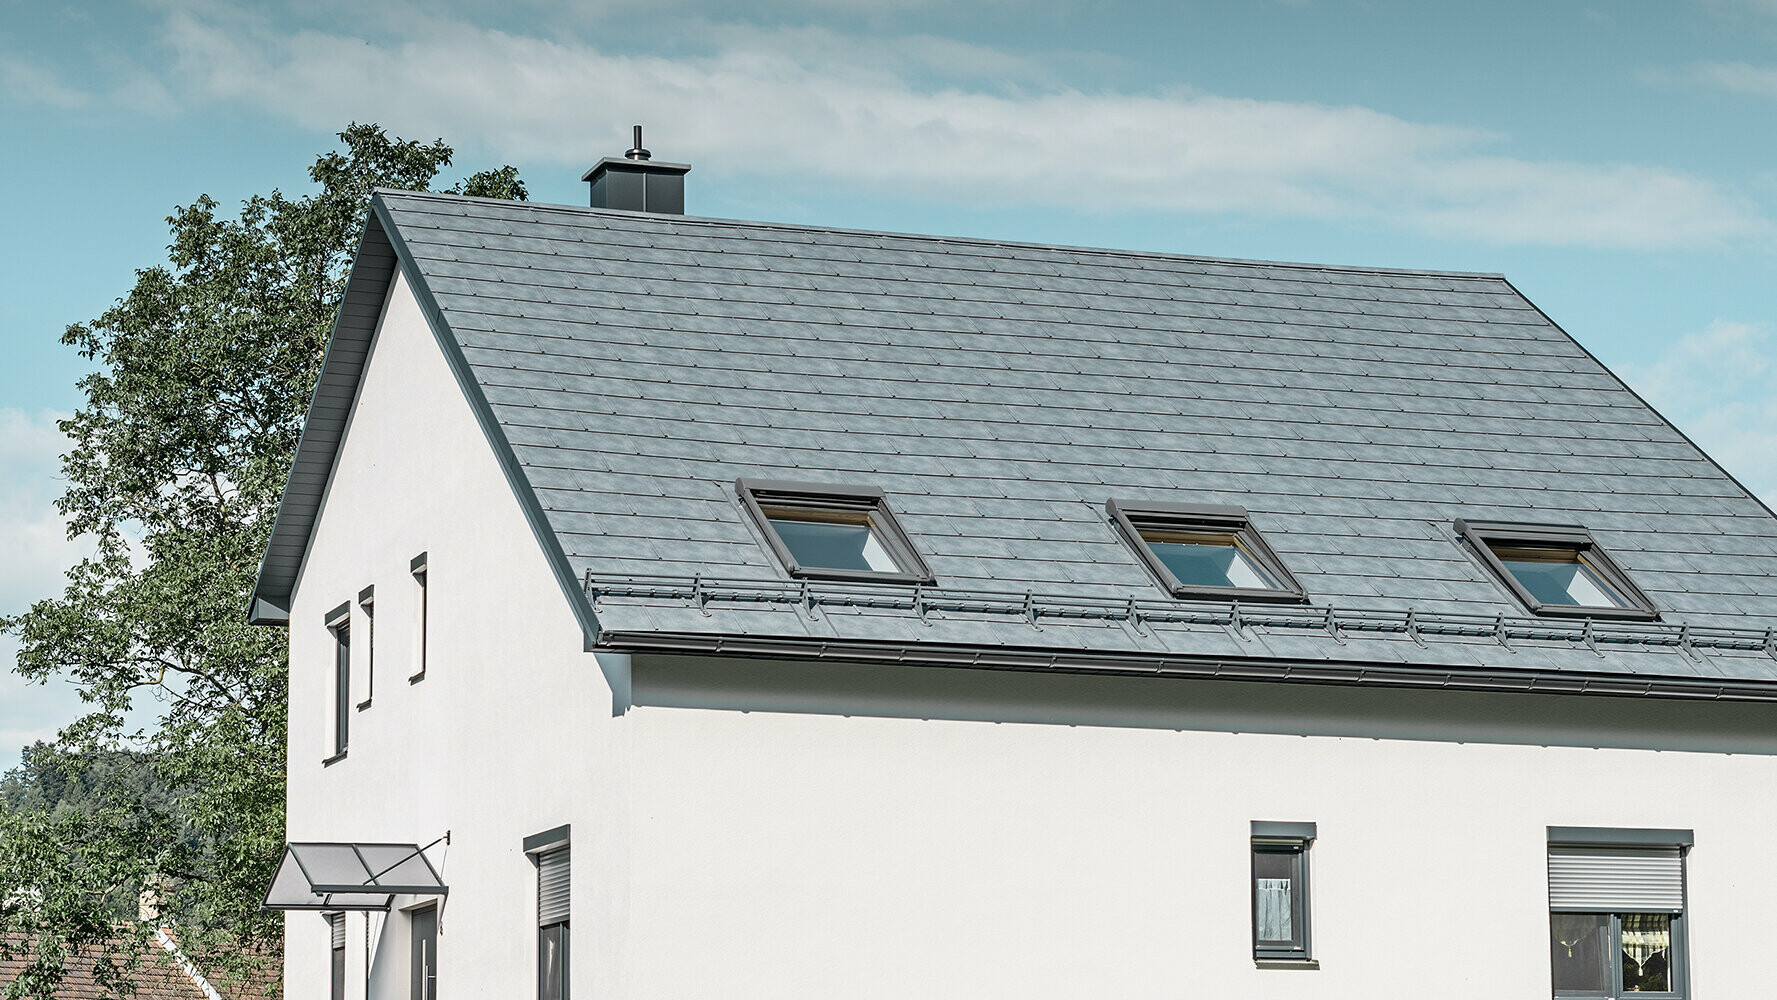 Klassisches Einfamilienhaus mit PREFA Dachplatte R.16 in Steingrau